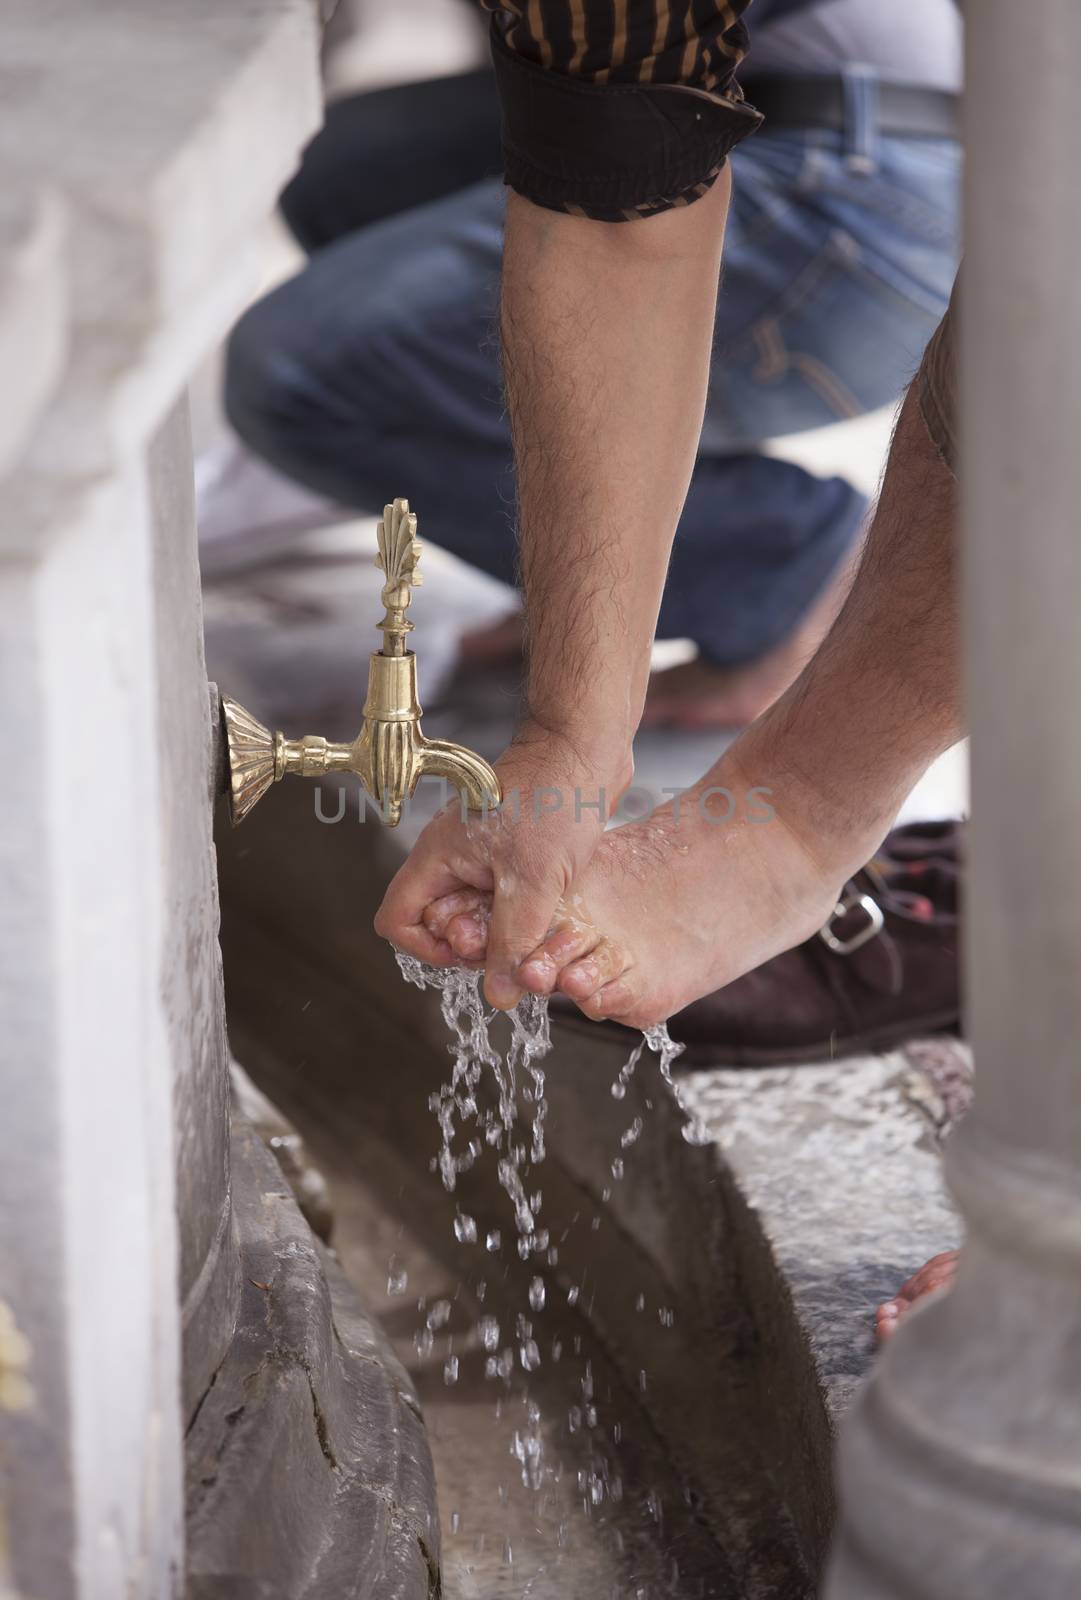 Muslim man in Turkey washing his feet in public fountain